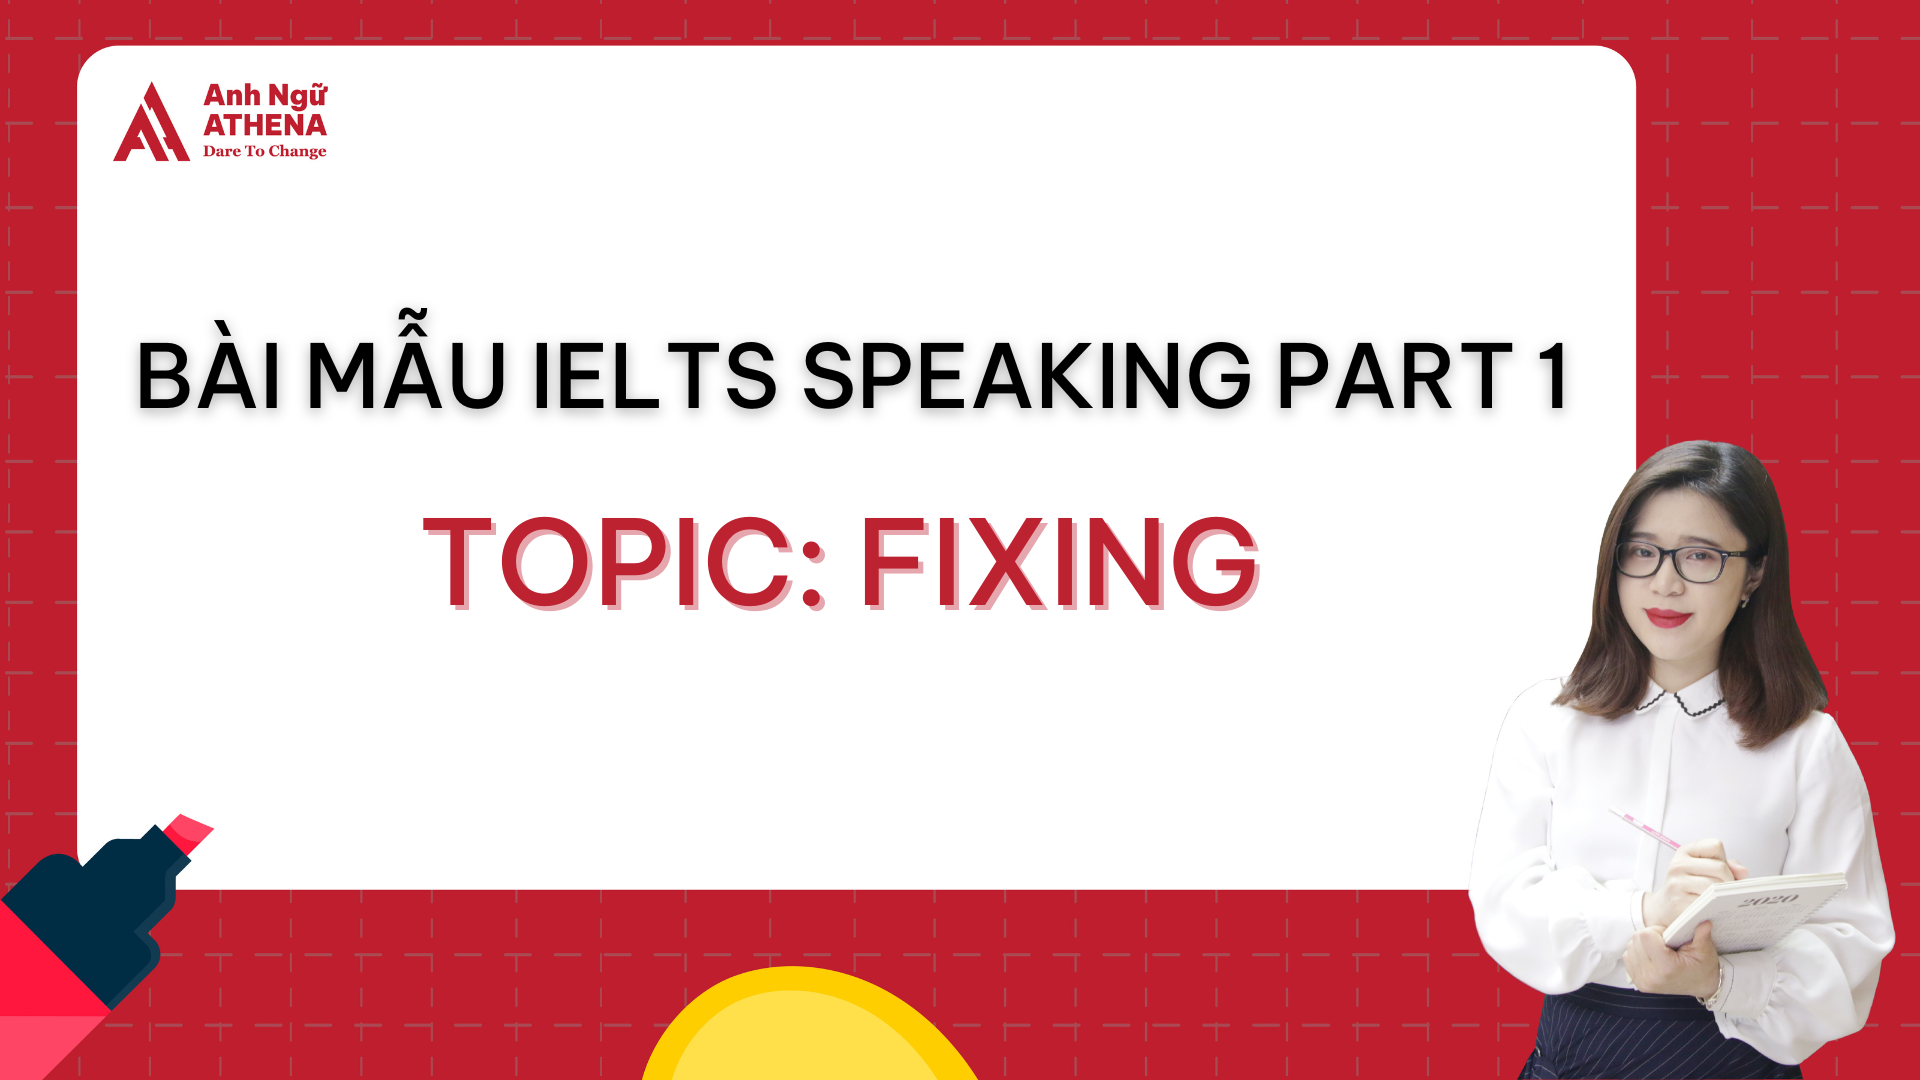 Bài mẫu IELTS Speaking Part 1 - Topic: Fixing